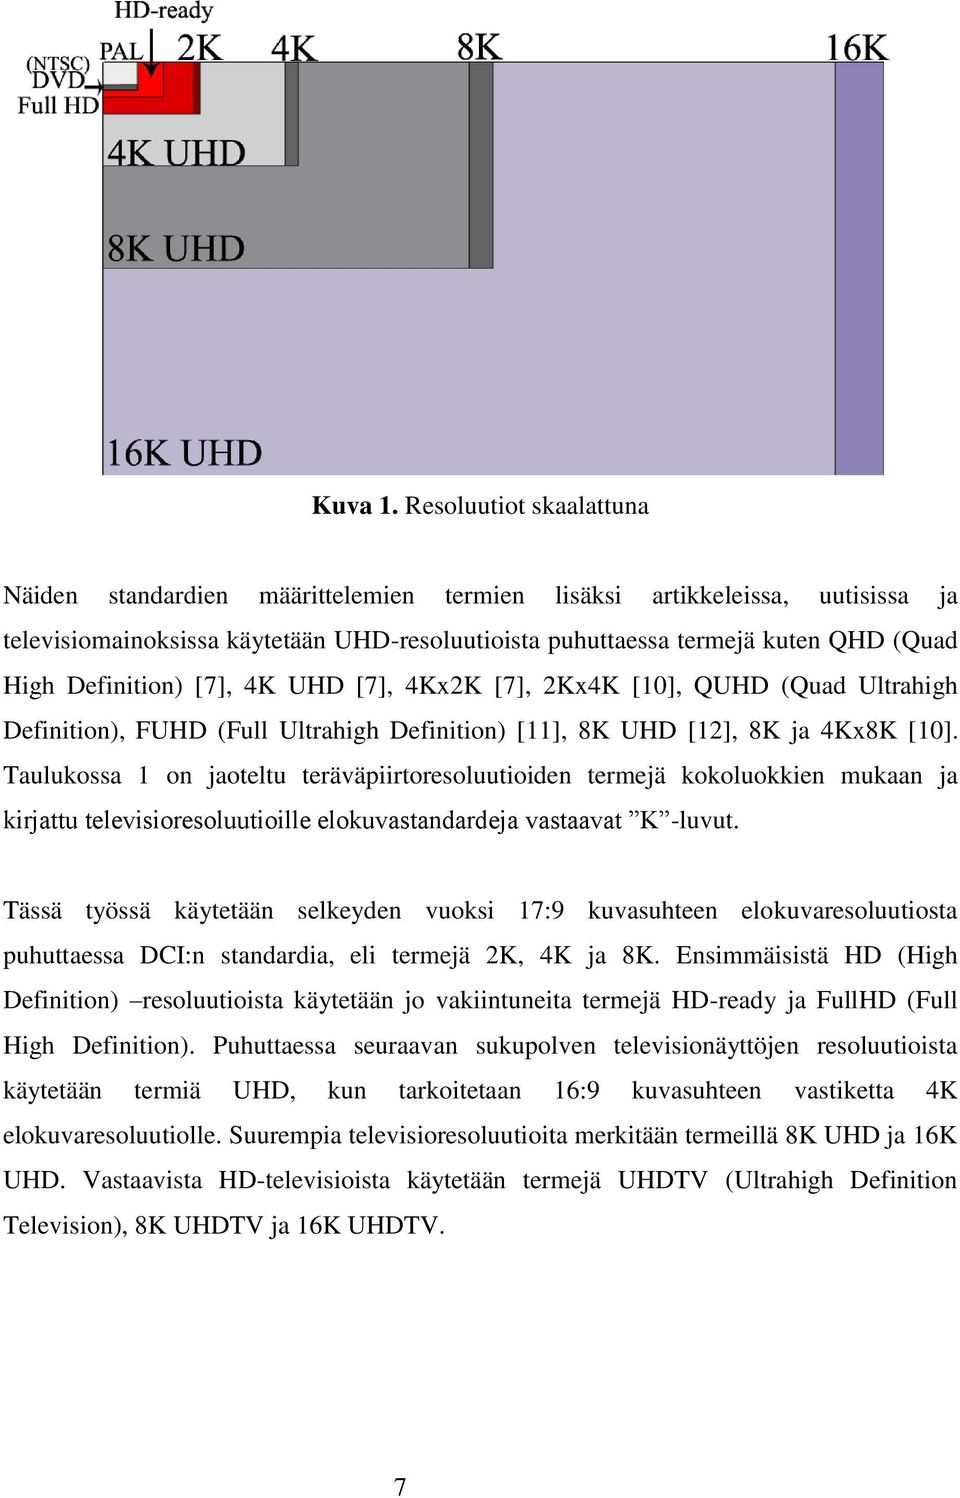 Definition) [7], 4K UHD [7], 4Kx2K [7], 2Kx4K [10], QUHD (Quad Ultrahigh Definition), FUHD (Full Ultrahigh Definition) [11], 8K UHD [12], 8K ja 4Kx8K [10].